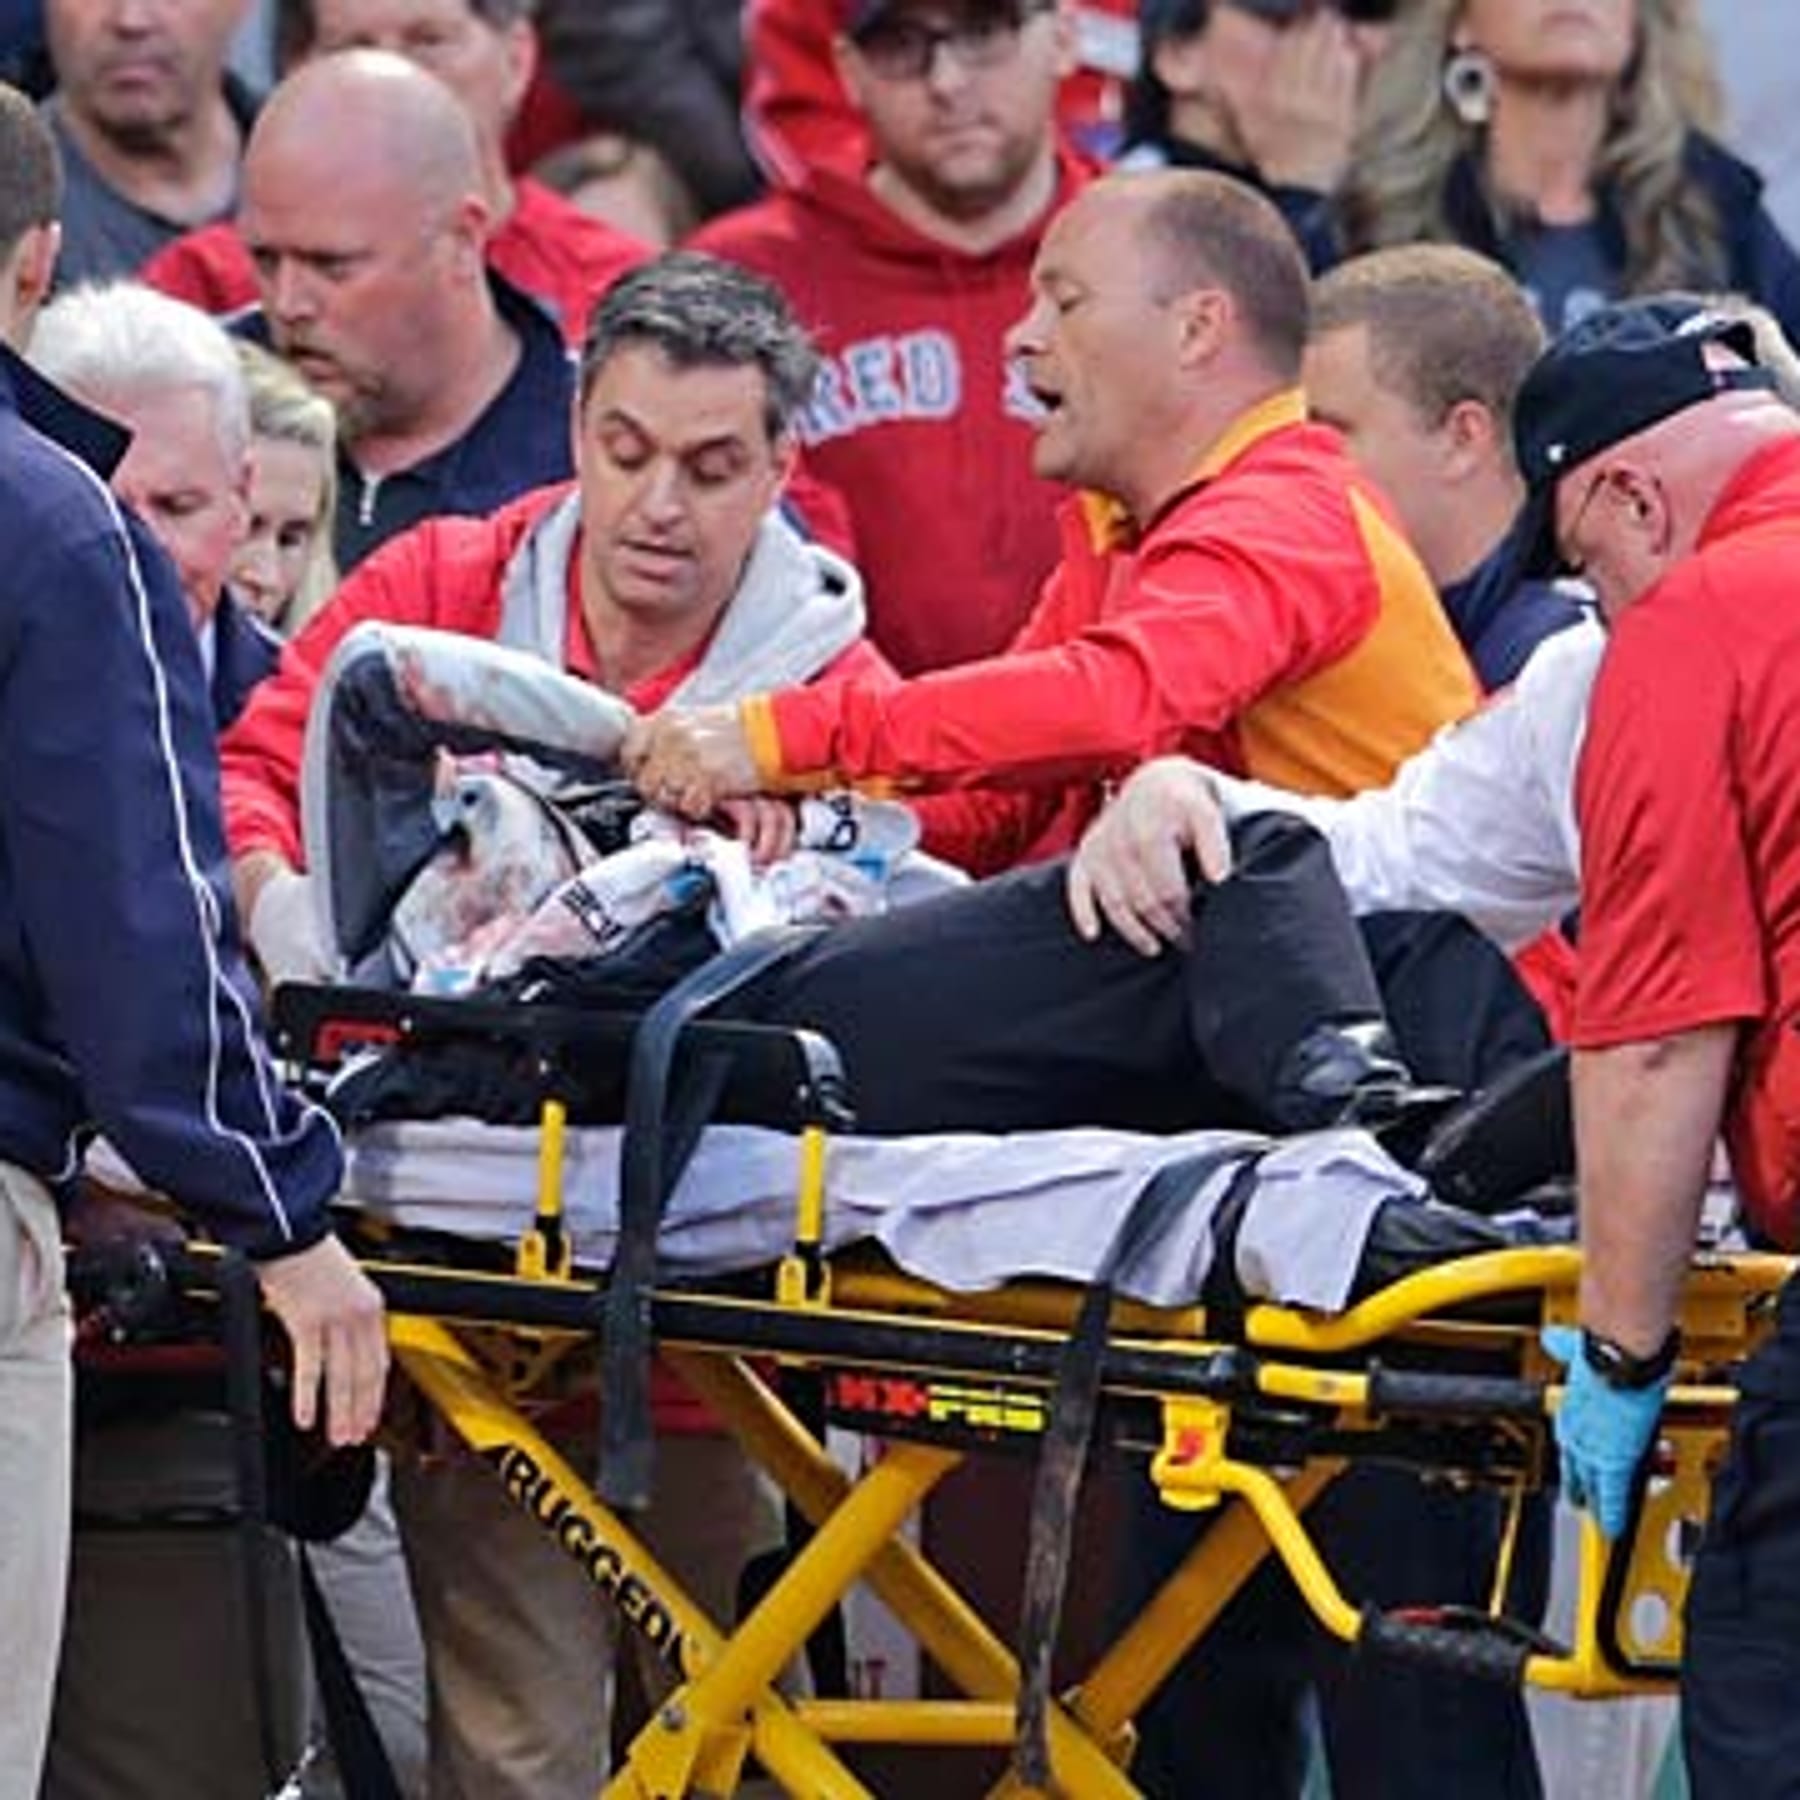 Boston Baseball-Fan von abgebrochenem Schläger im Gesicht getroffen